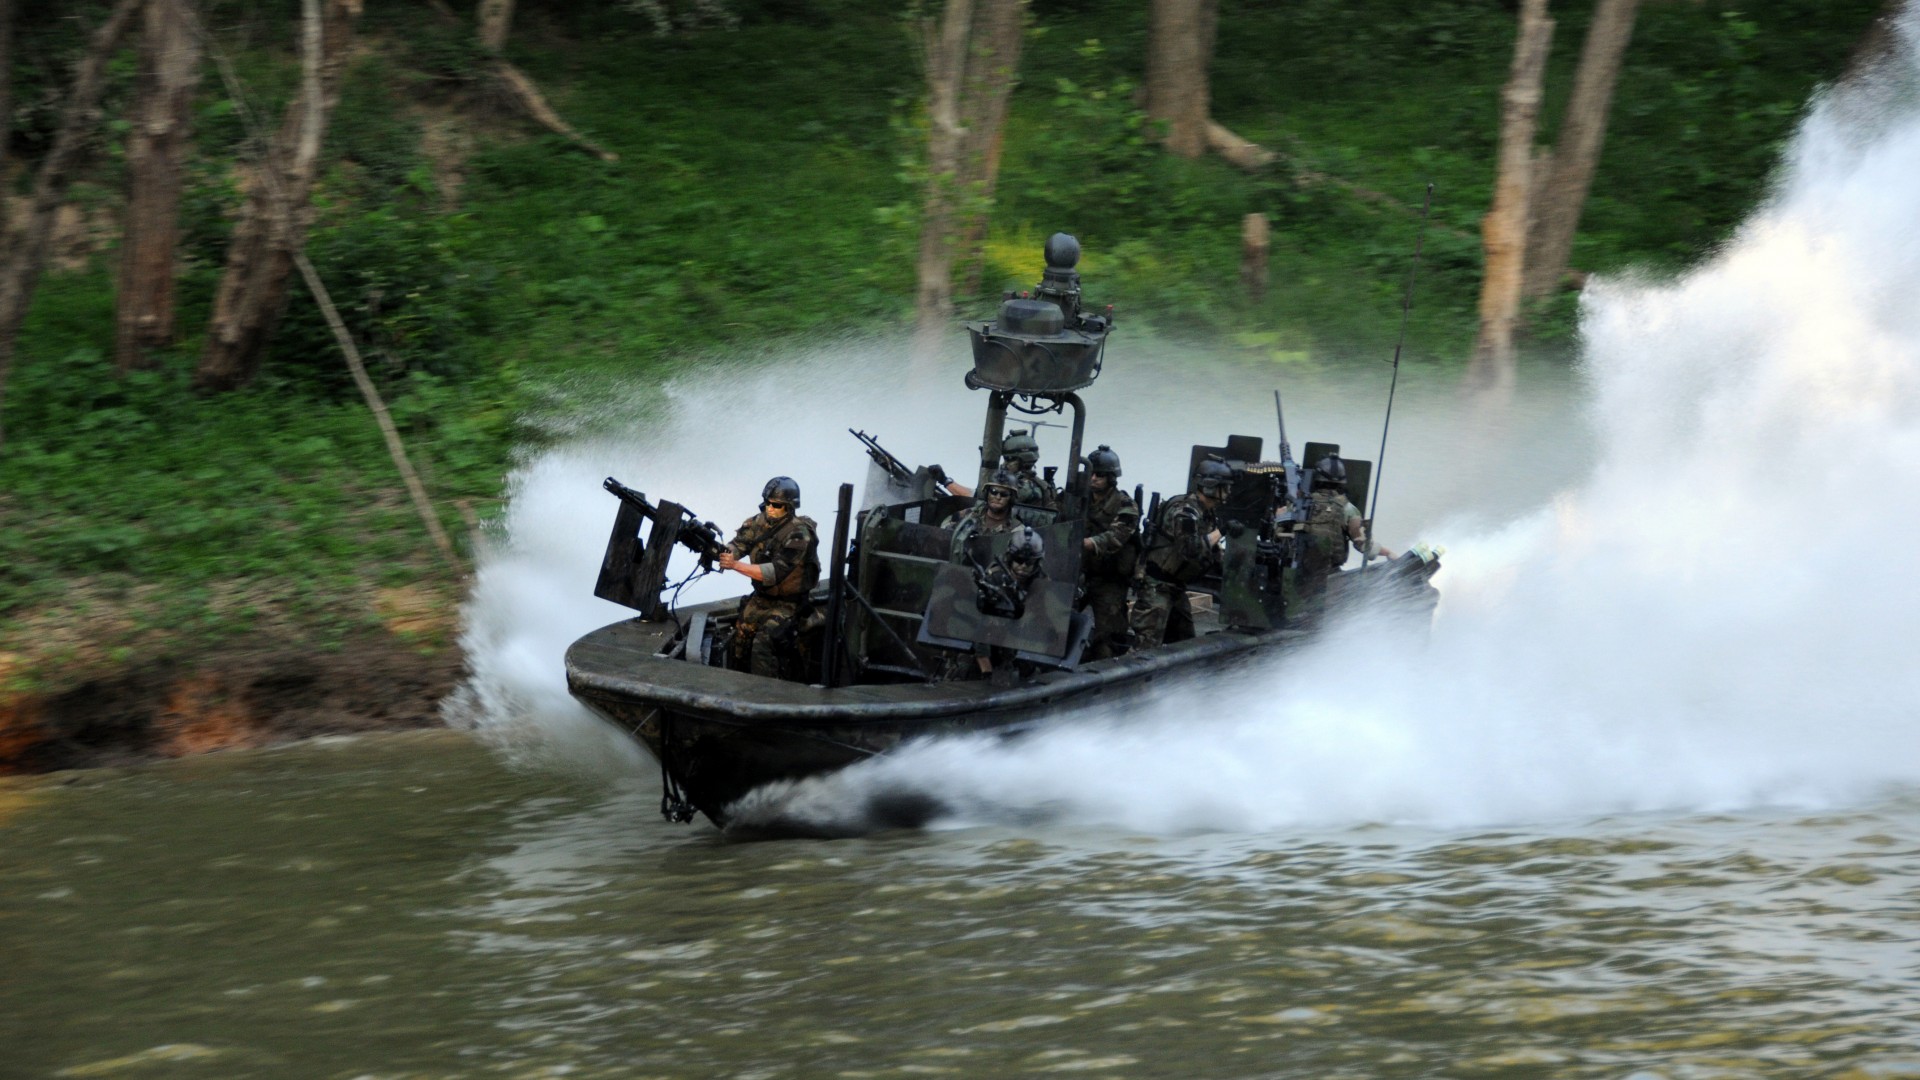 боевой катер, река, воинская часть специального назначения, SBT-22, special forces, special boat team, Riverine, SOC-R, battle boat, river (horizontal)